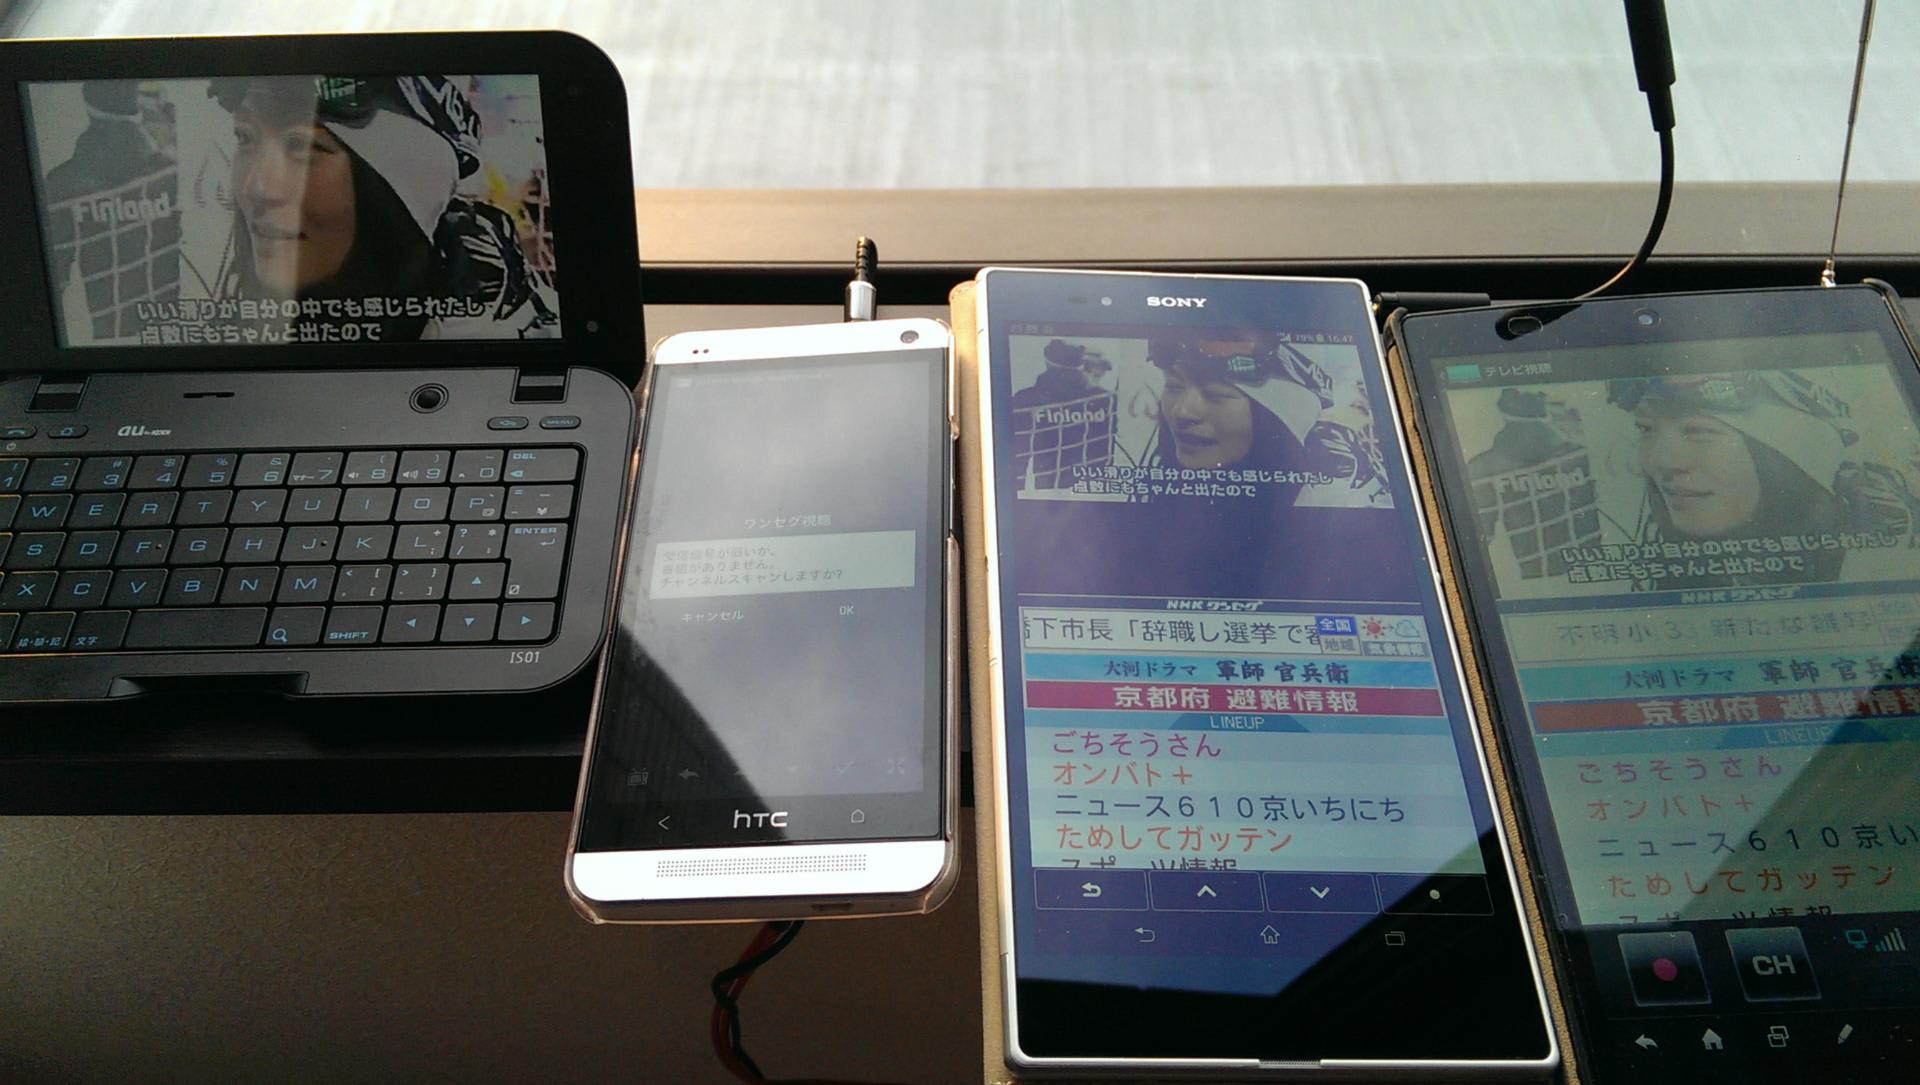 Xperia Z Ultra vs HTC J one vs AQUOS PAD vs IS01 TV編(長げーよ